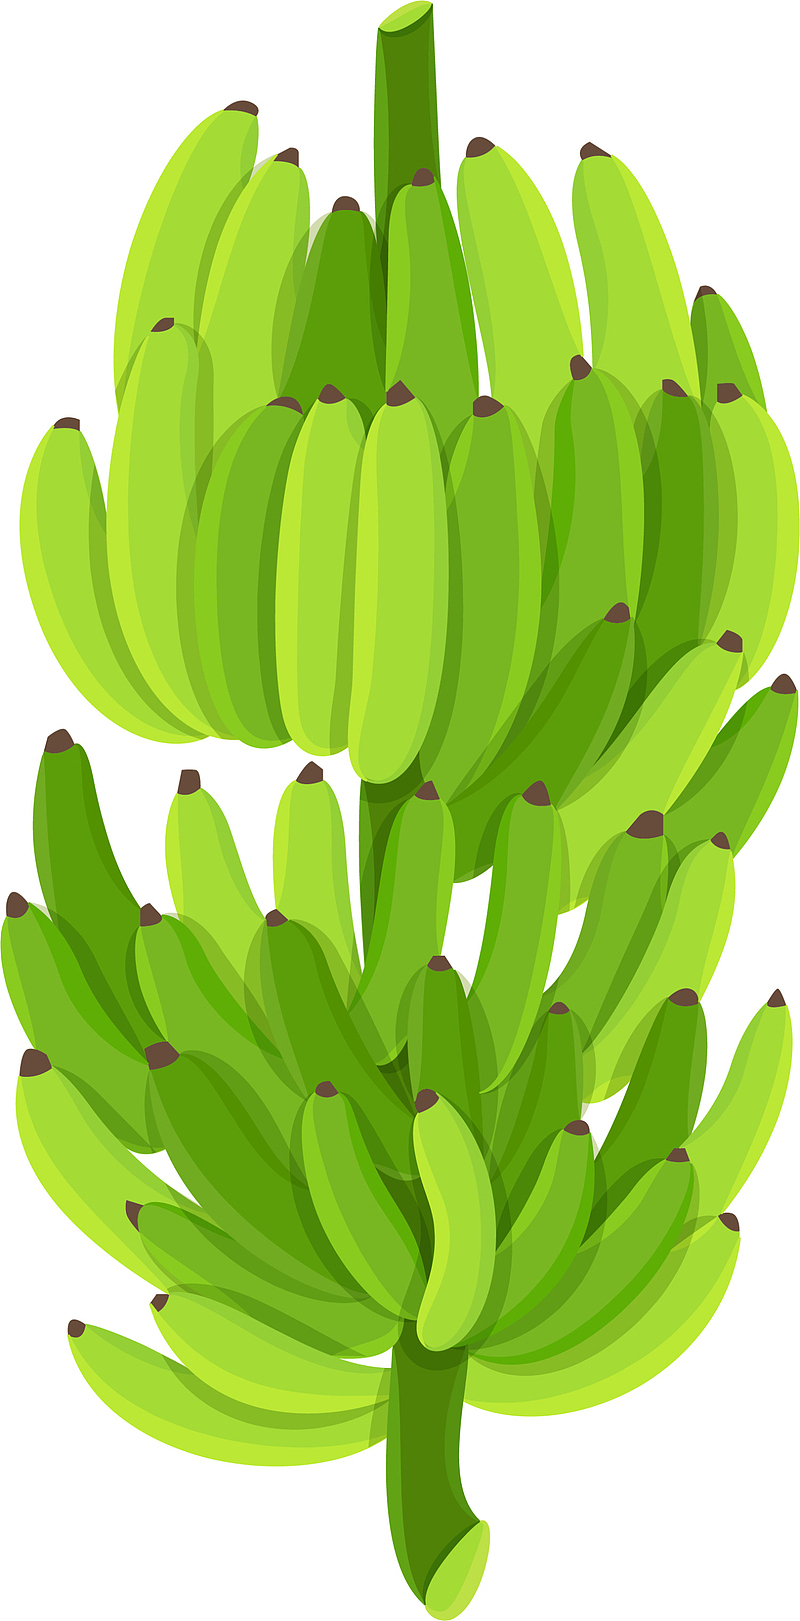 青涩绿色香蕉